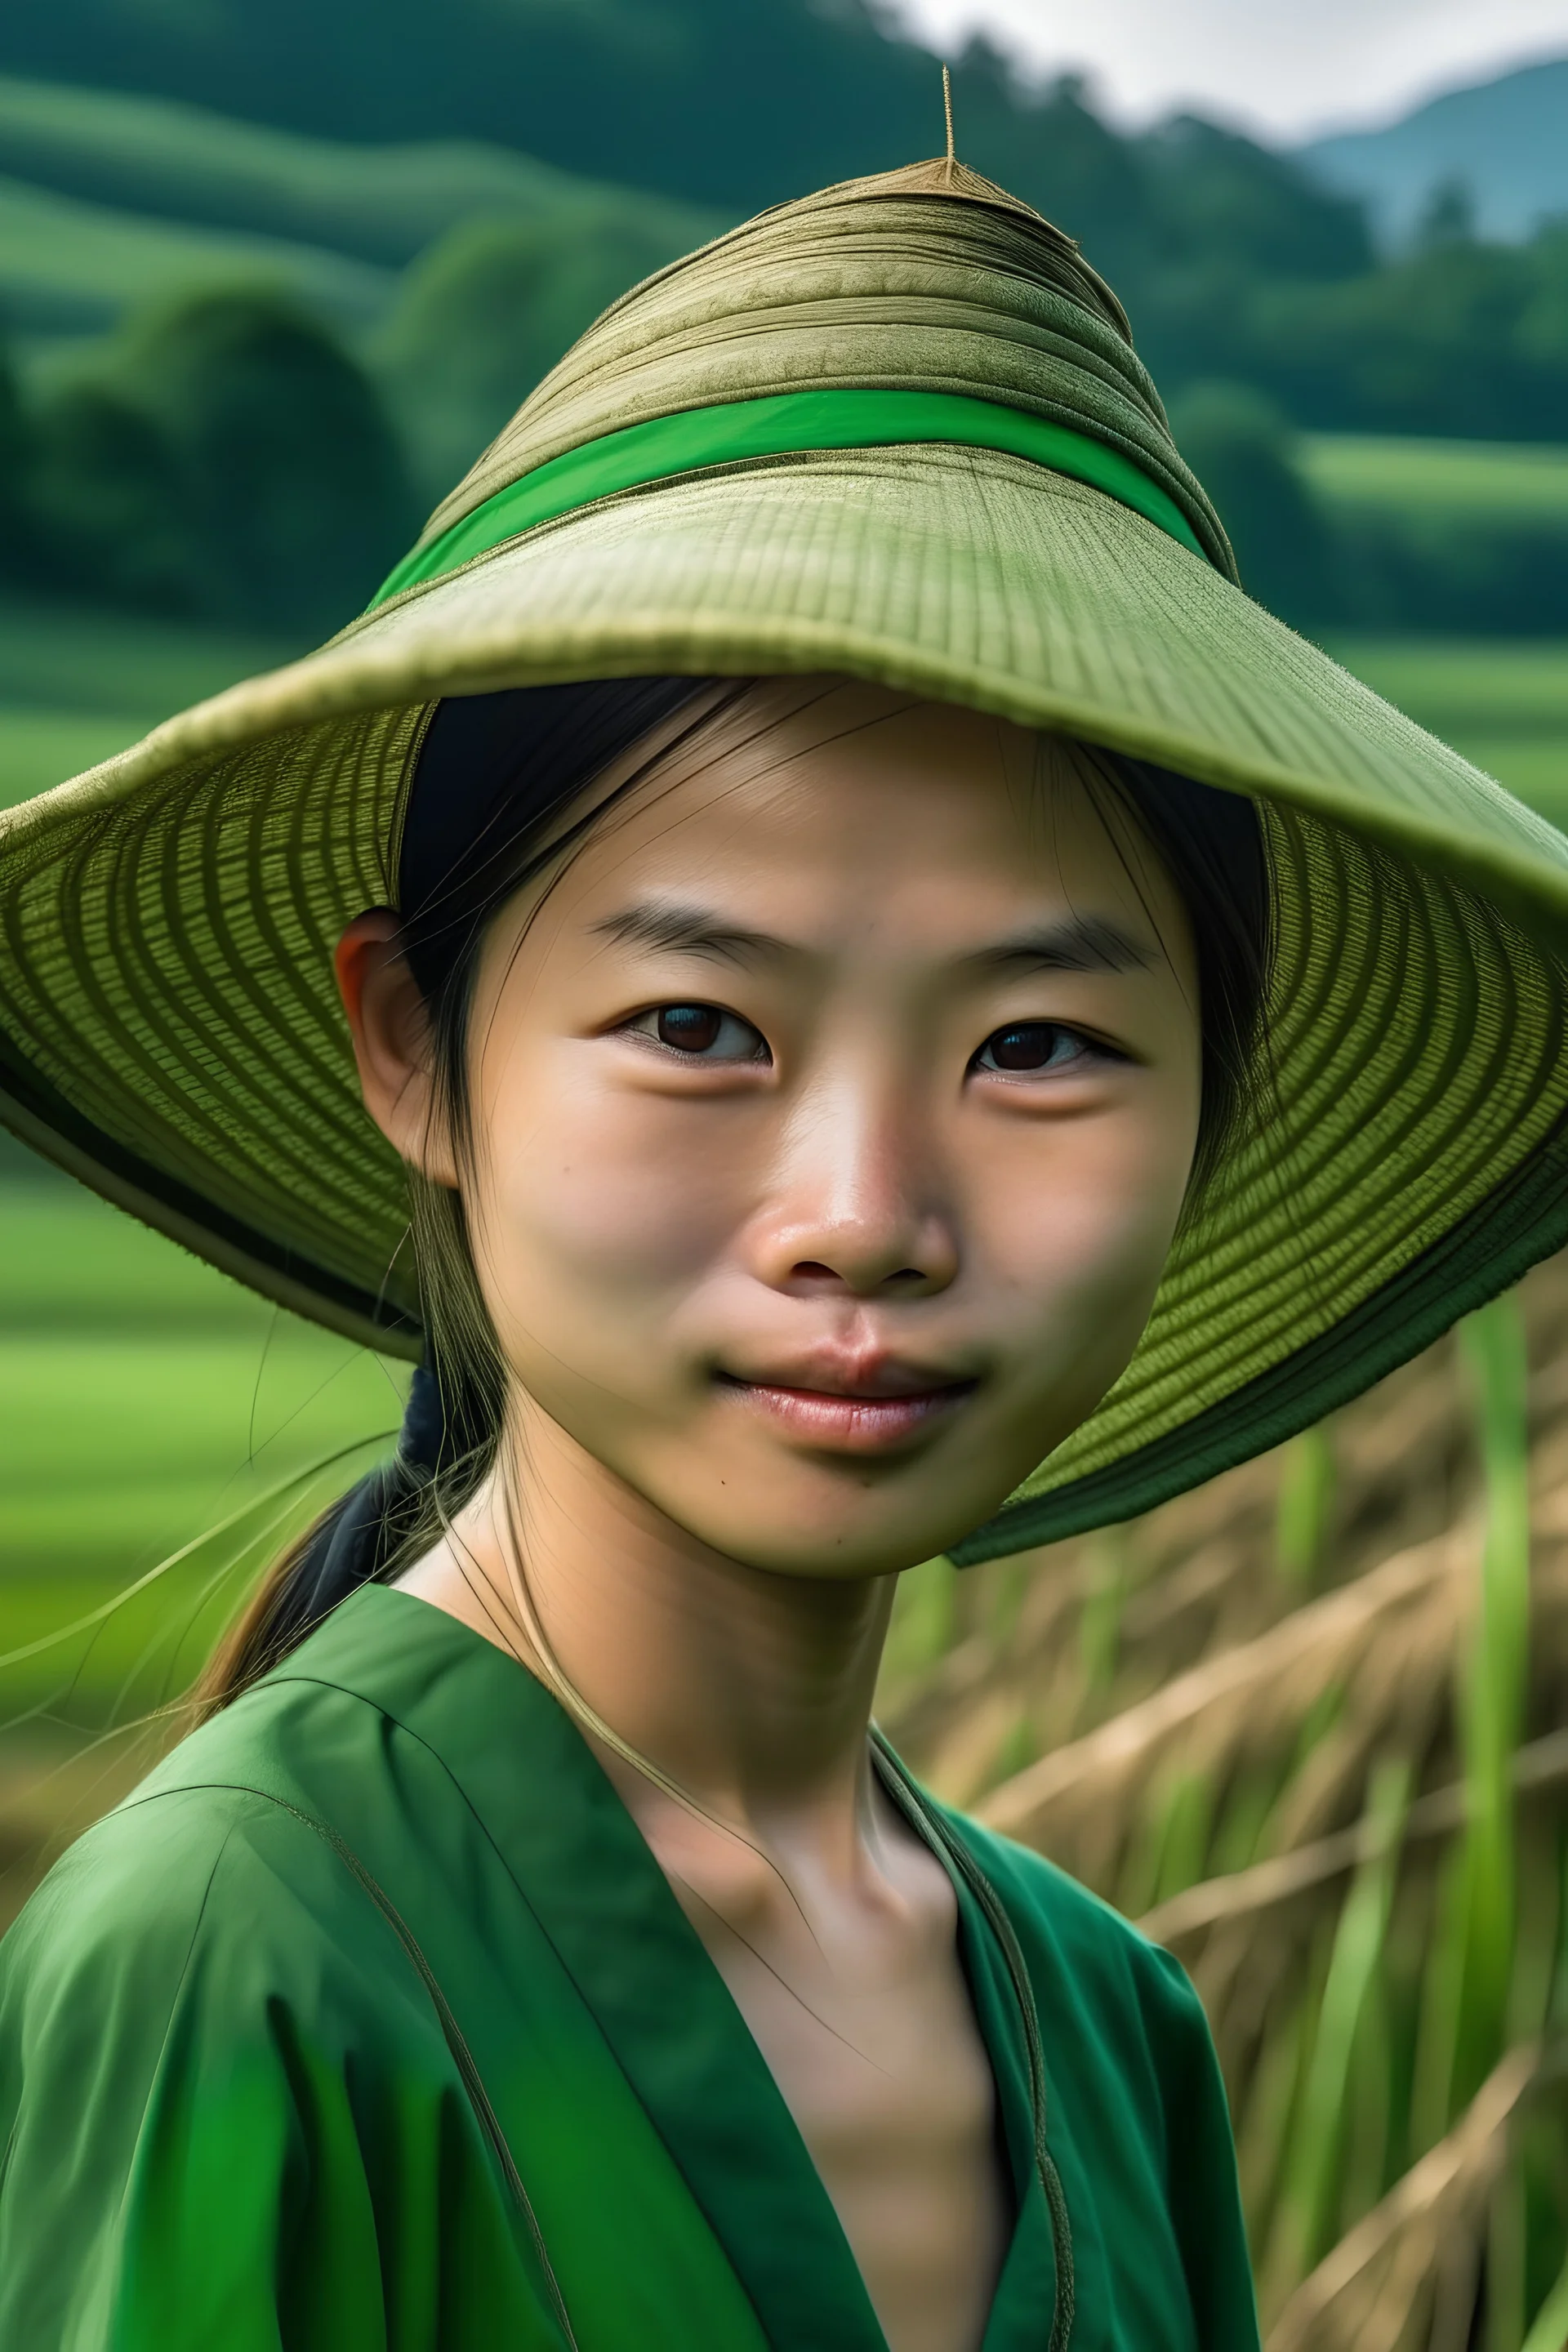 Siti adalah seorang gadis cantik yang hidup disebuah desa dikaki bukit dengan sawah-sawah yang membentang luas dengan tanaman padi yang menghijau dan petani yang sedang bekerja